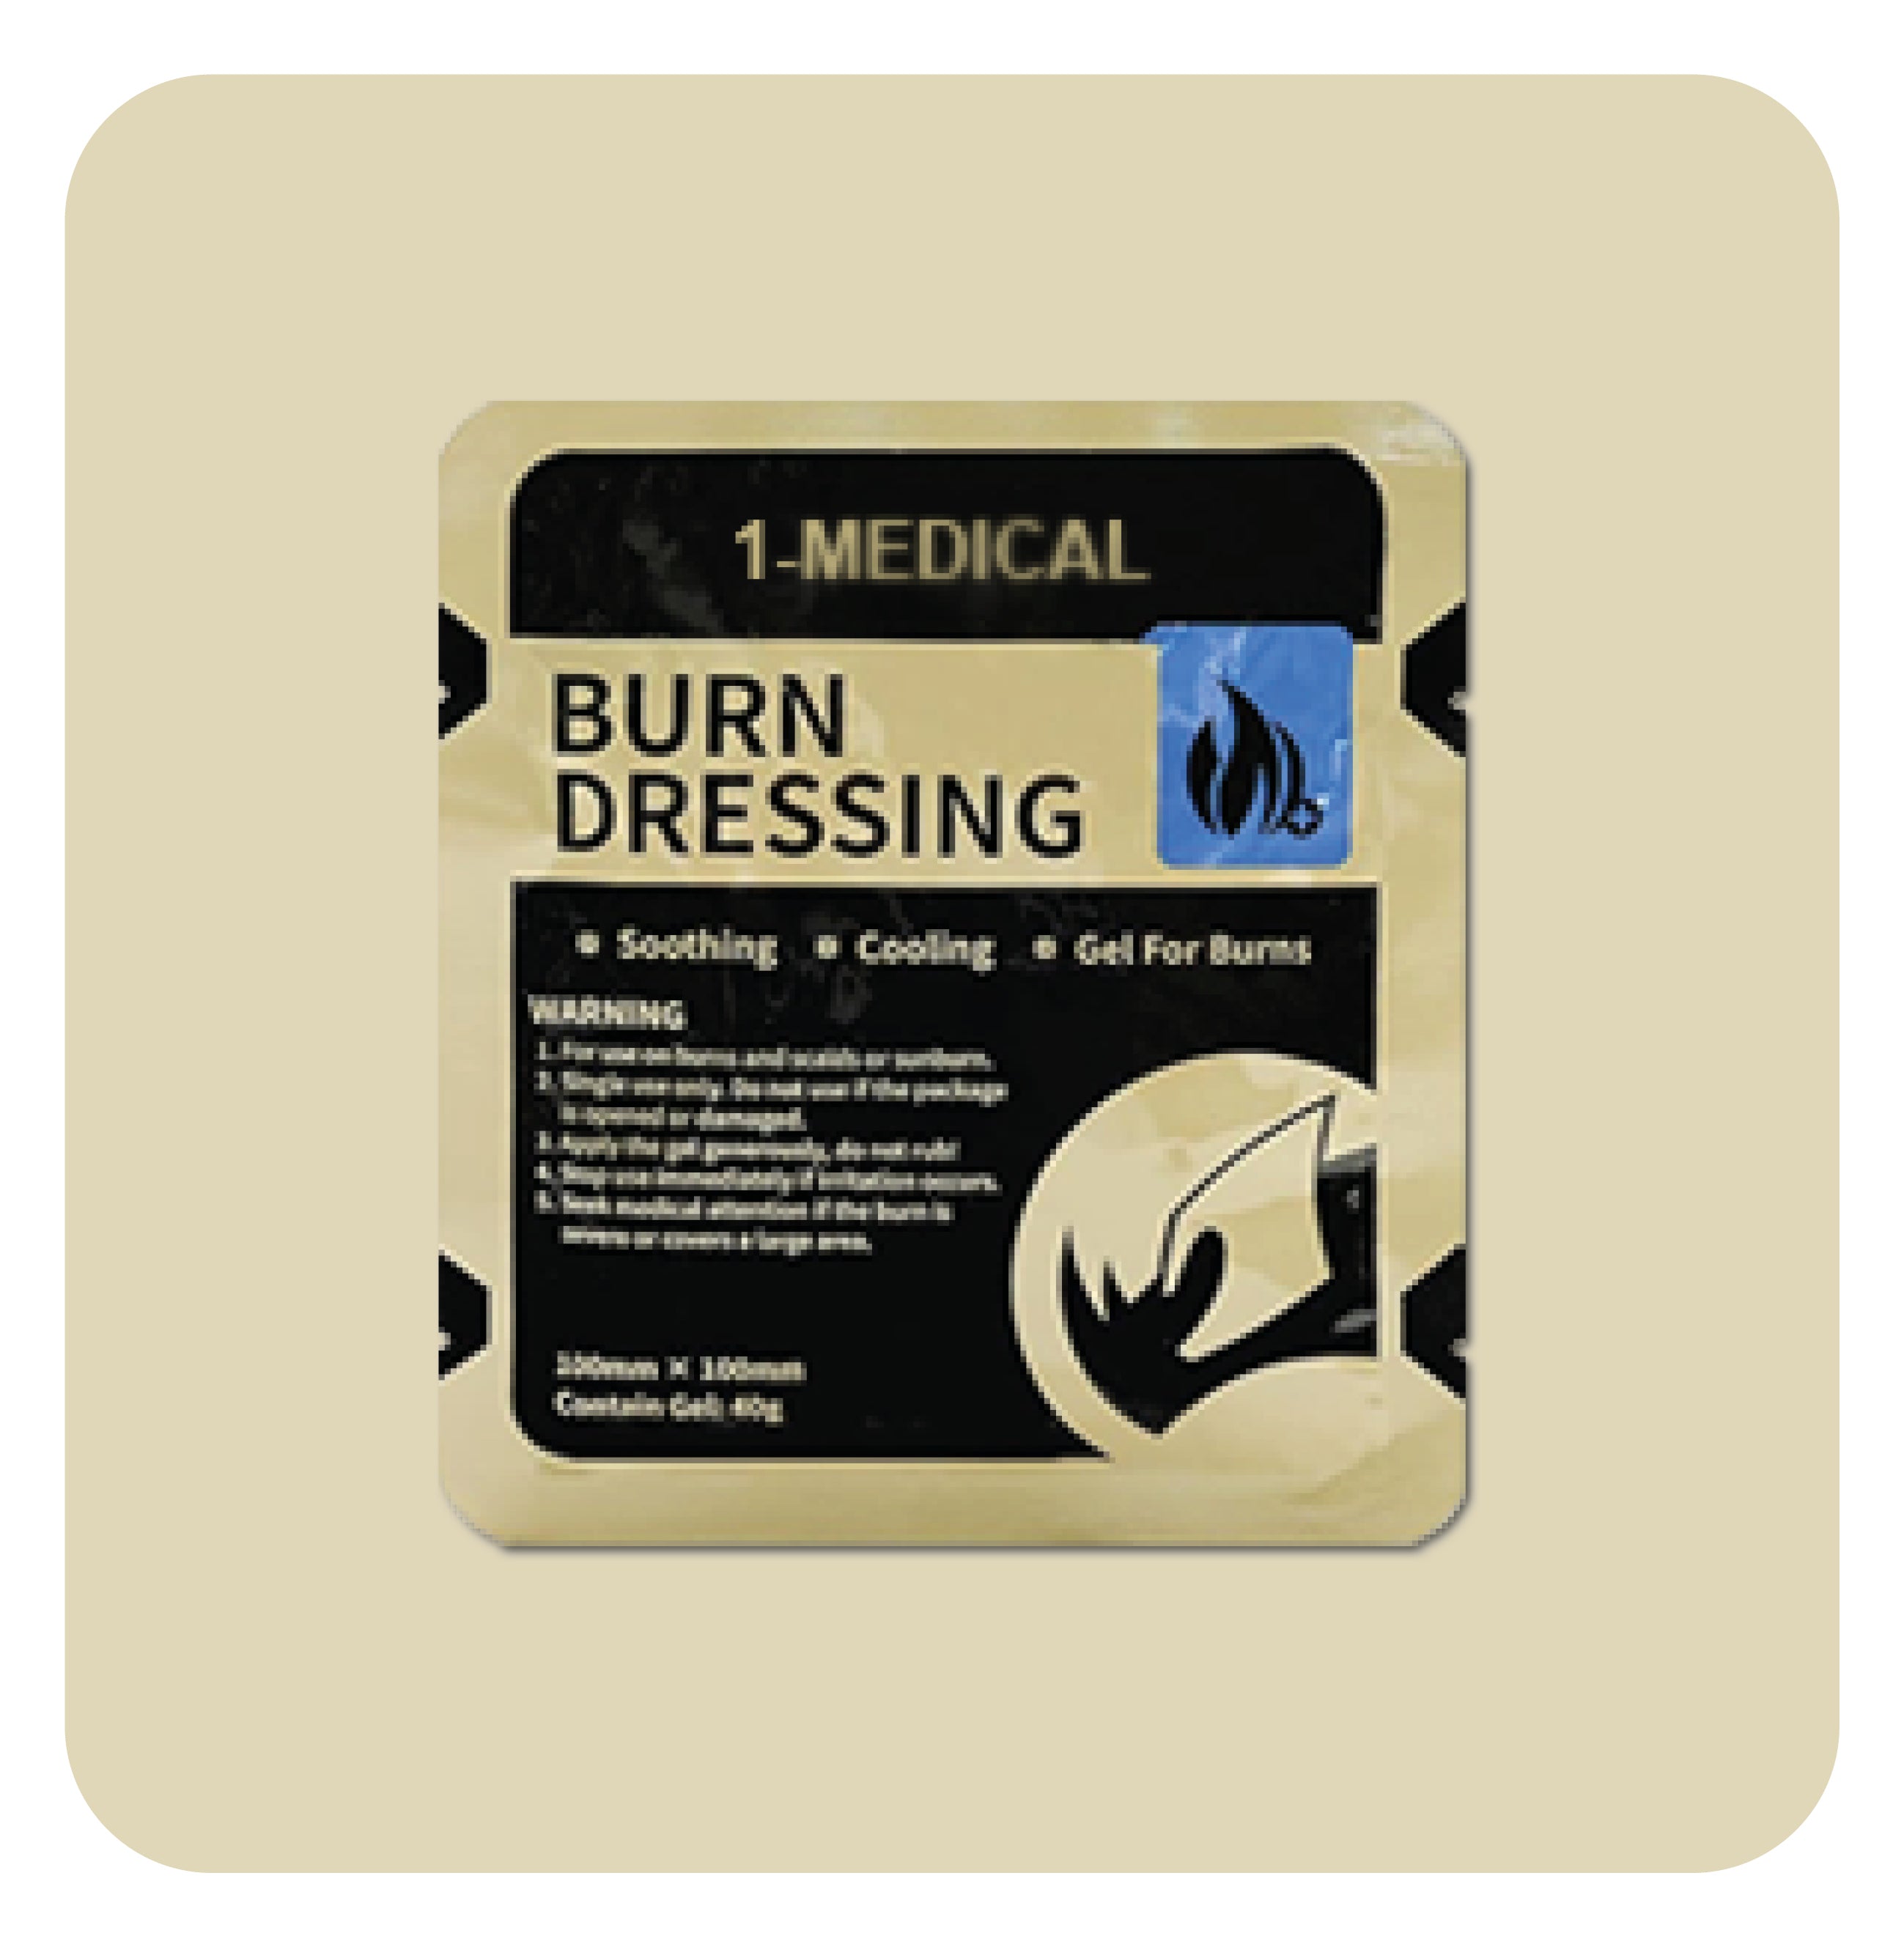 Burn dressings - 2 sizes